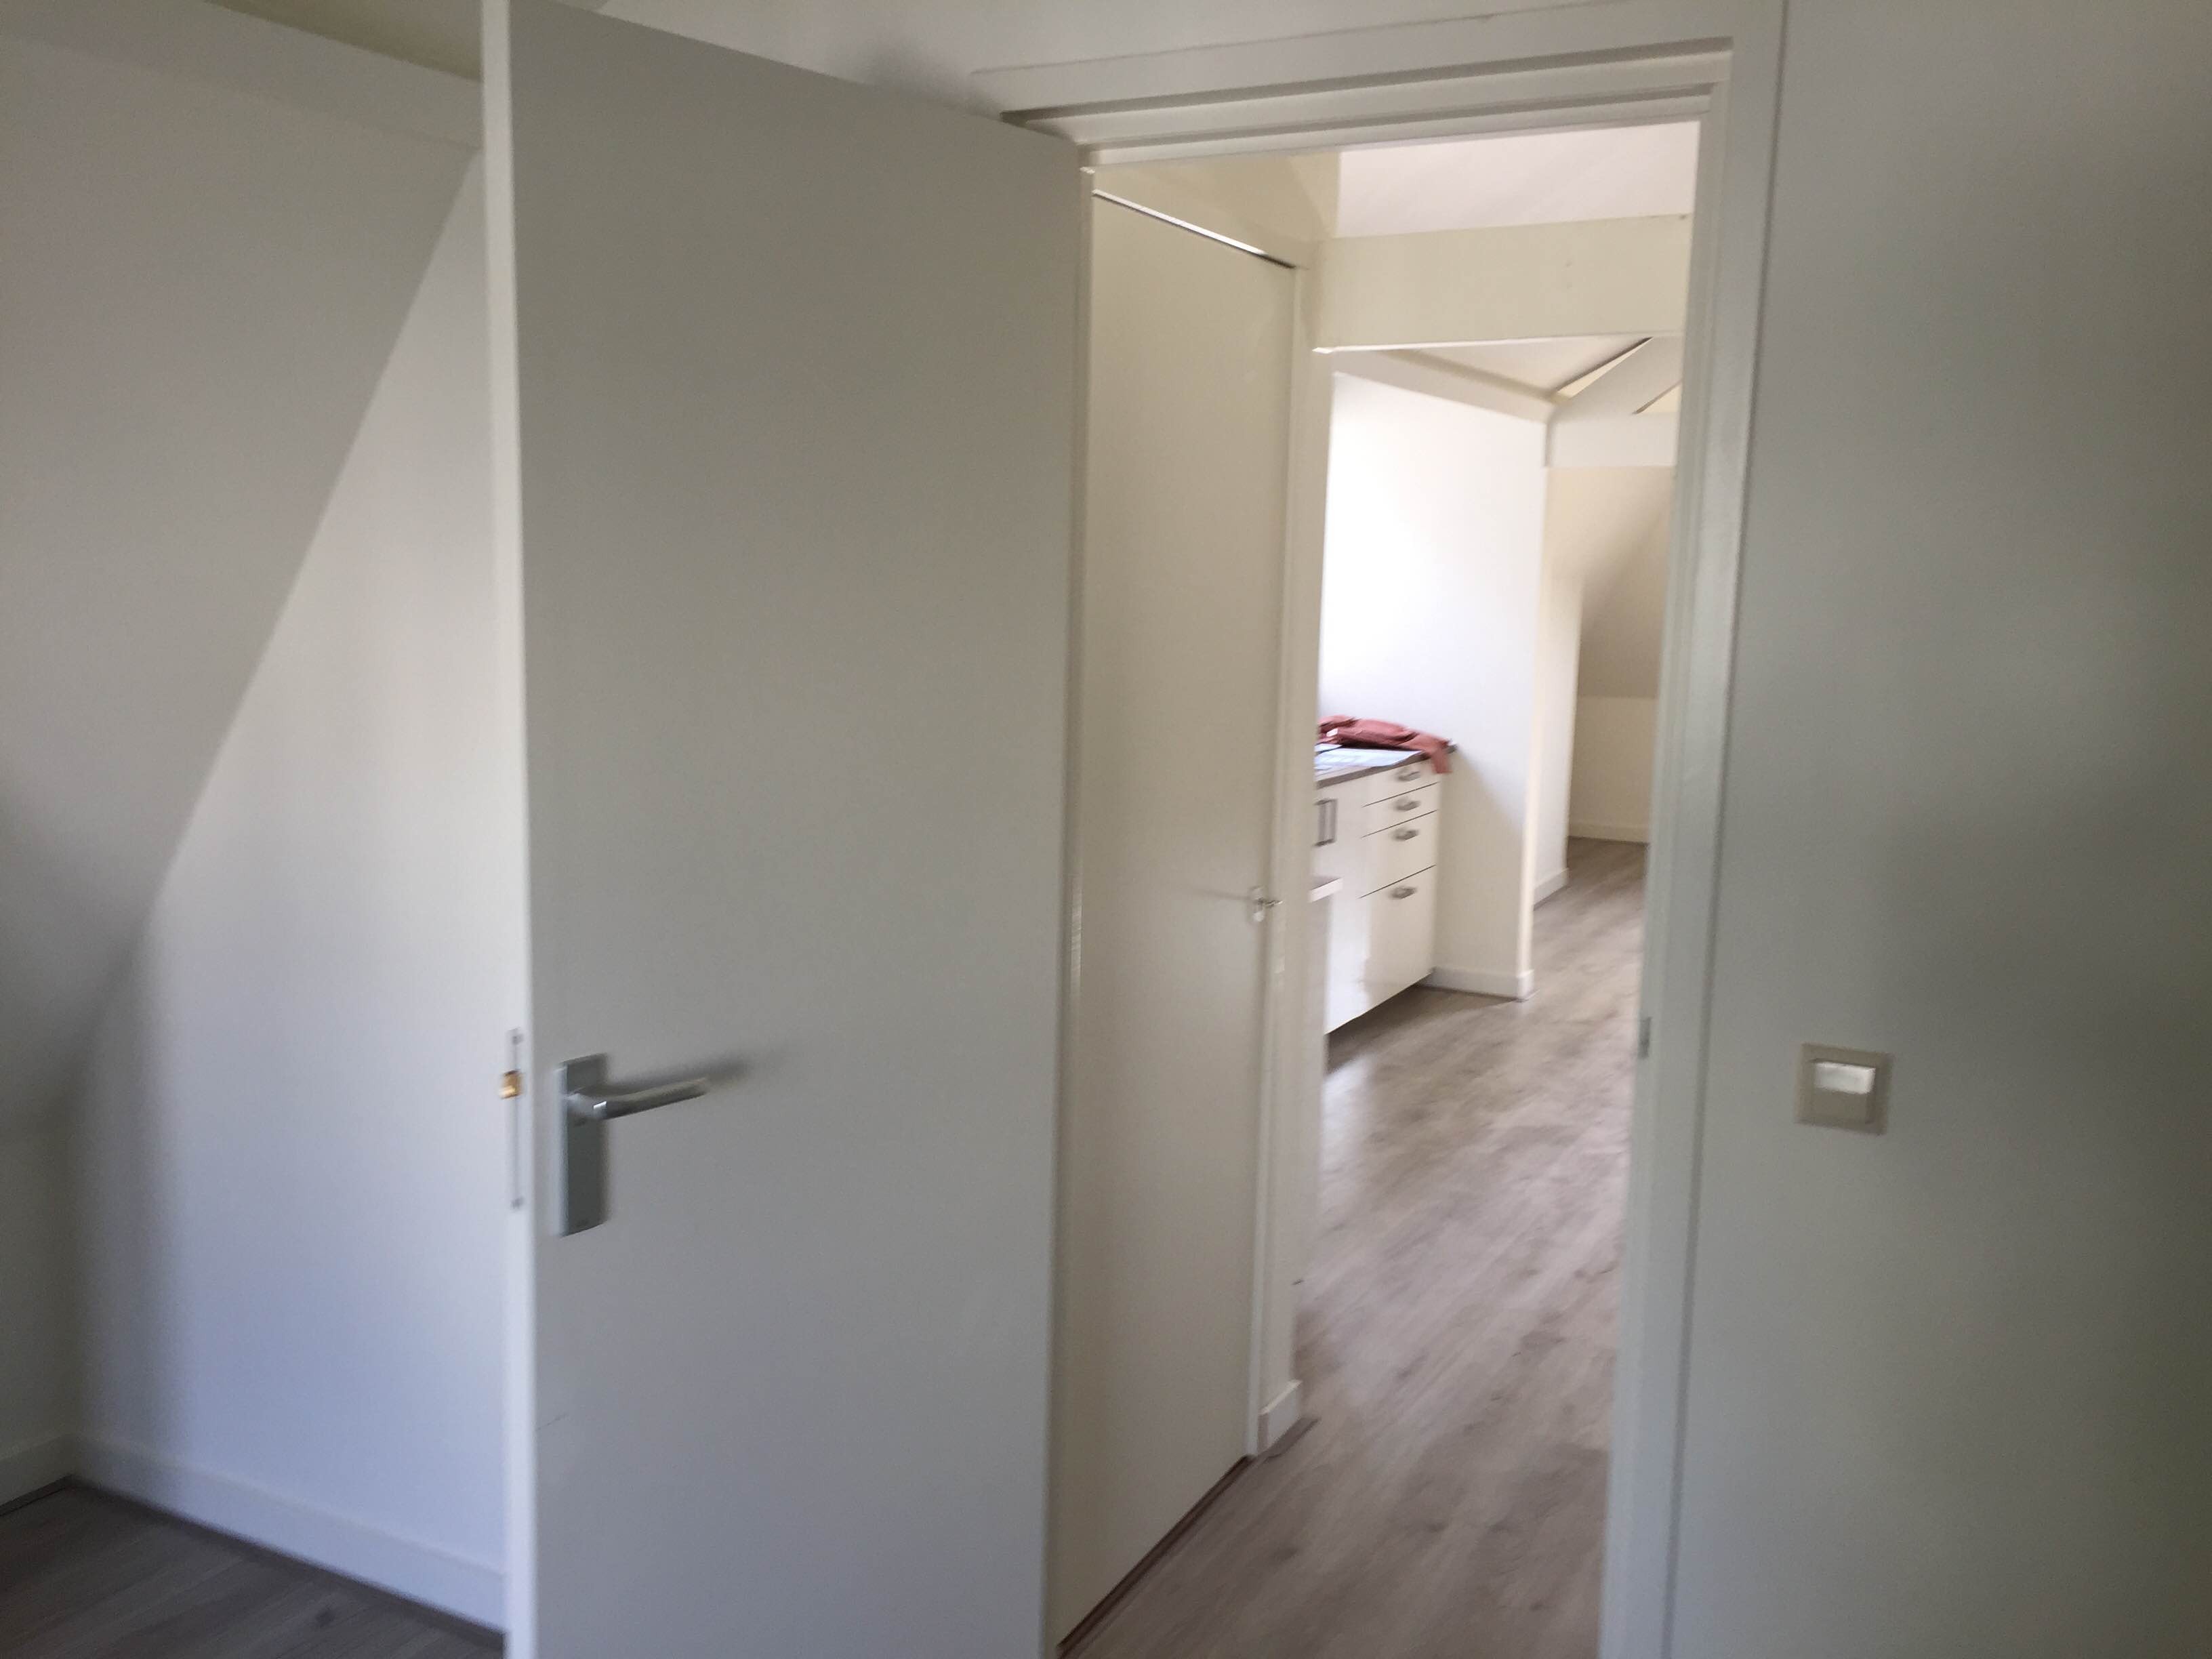 Woning / appartement - Rotterdam - Joost van Geelstraat 56